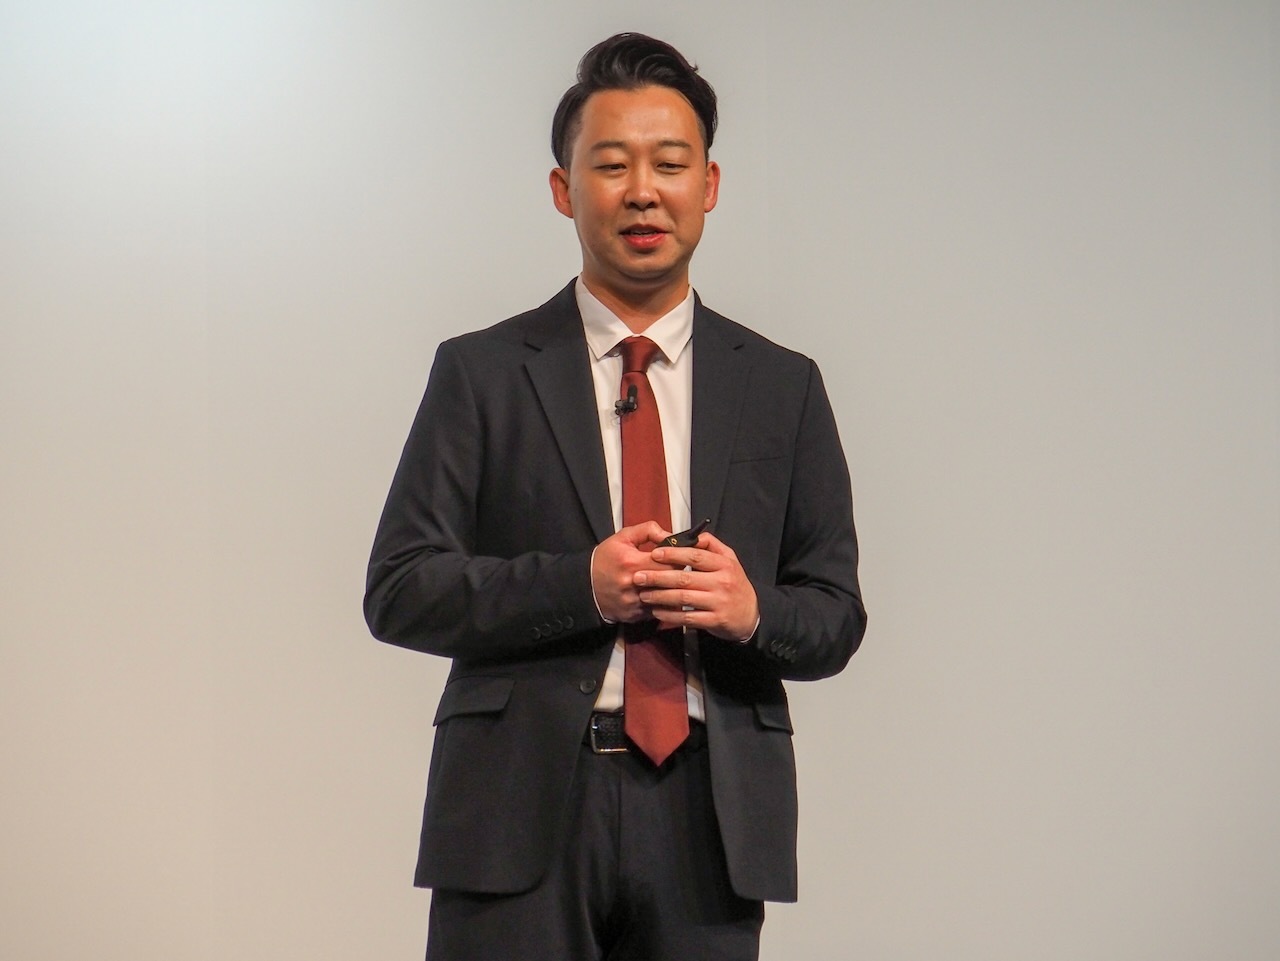 矢澤氏は2022年3月より楽天モバイルの代表取締役社長となり、国内事業を中心に担う立場となっている。写真は2022年2月25日の楽天モバイルプレスカンファレンスより